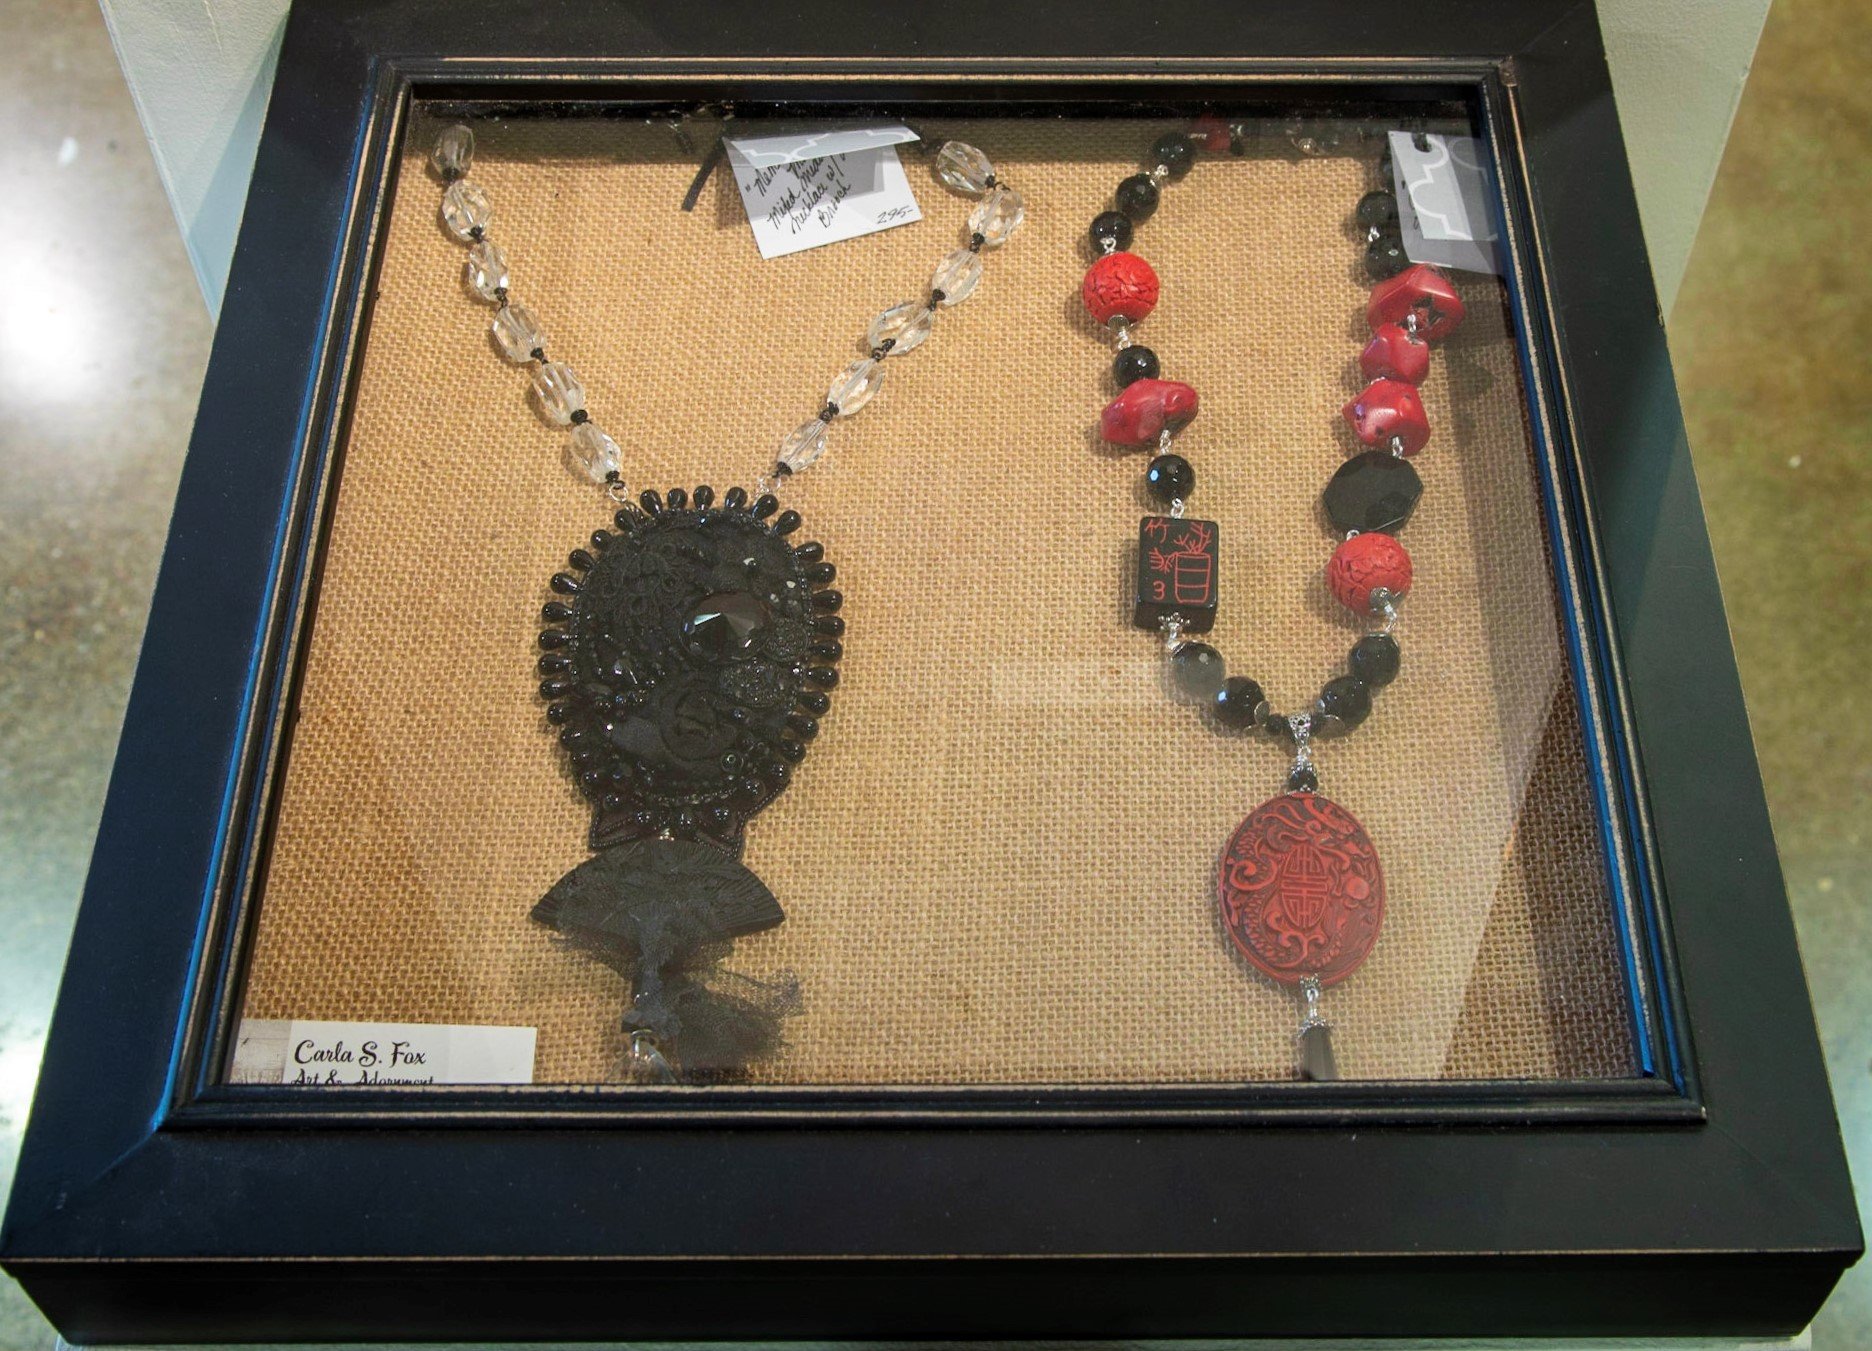 Carla Fox jewelry